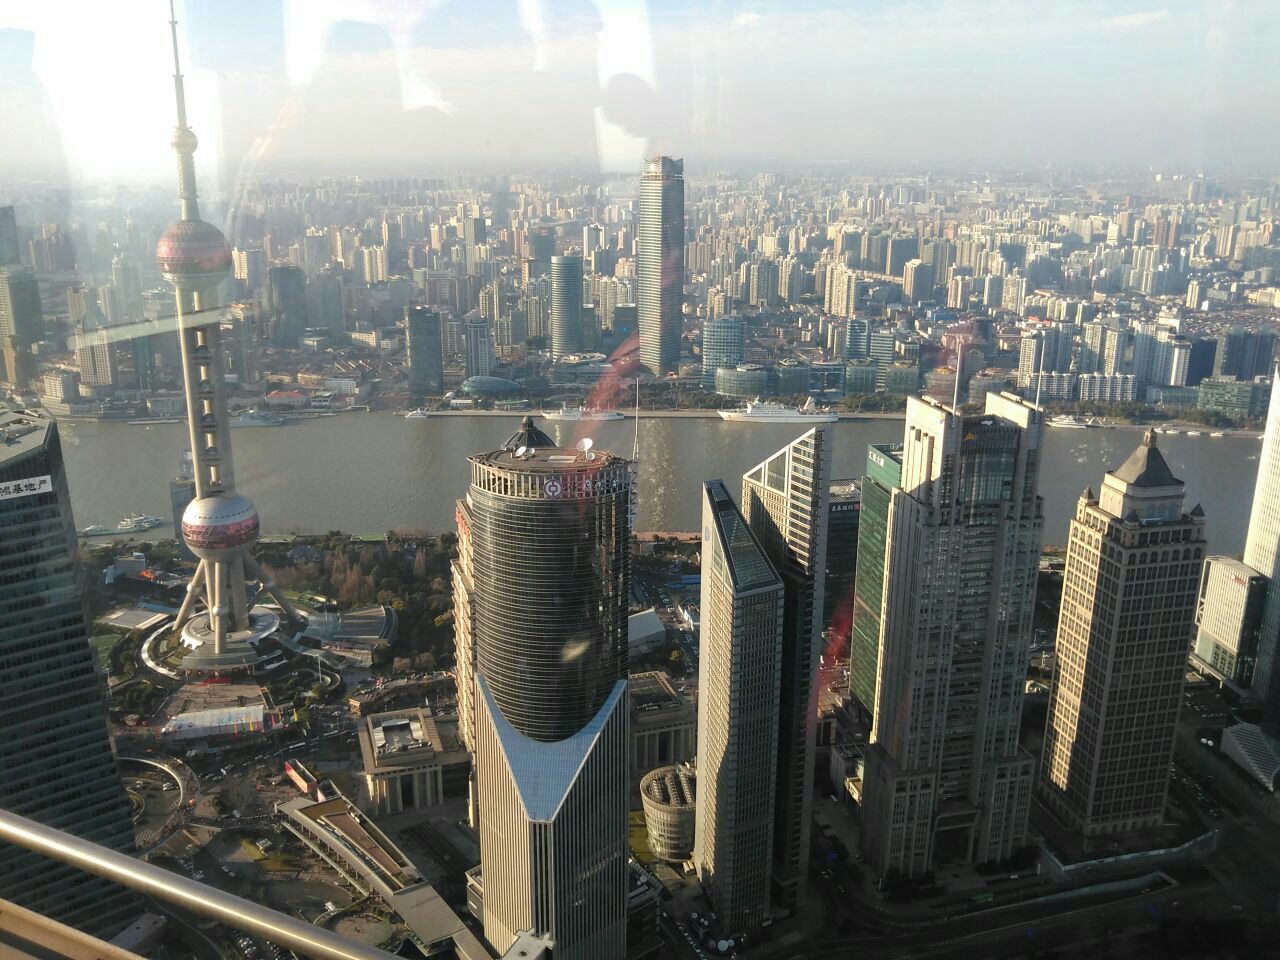 【携程攻略】上海金茂大厦88层观光厅景点,金茂88层超级棒 俯瞰整个上海